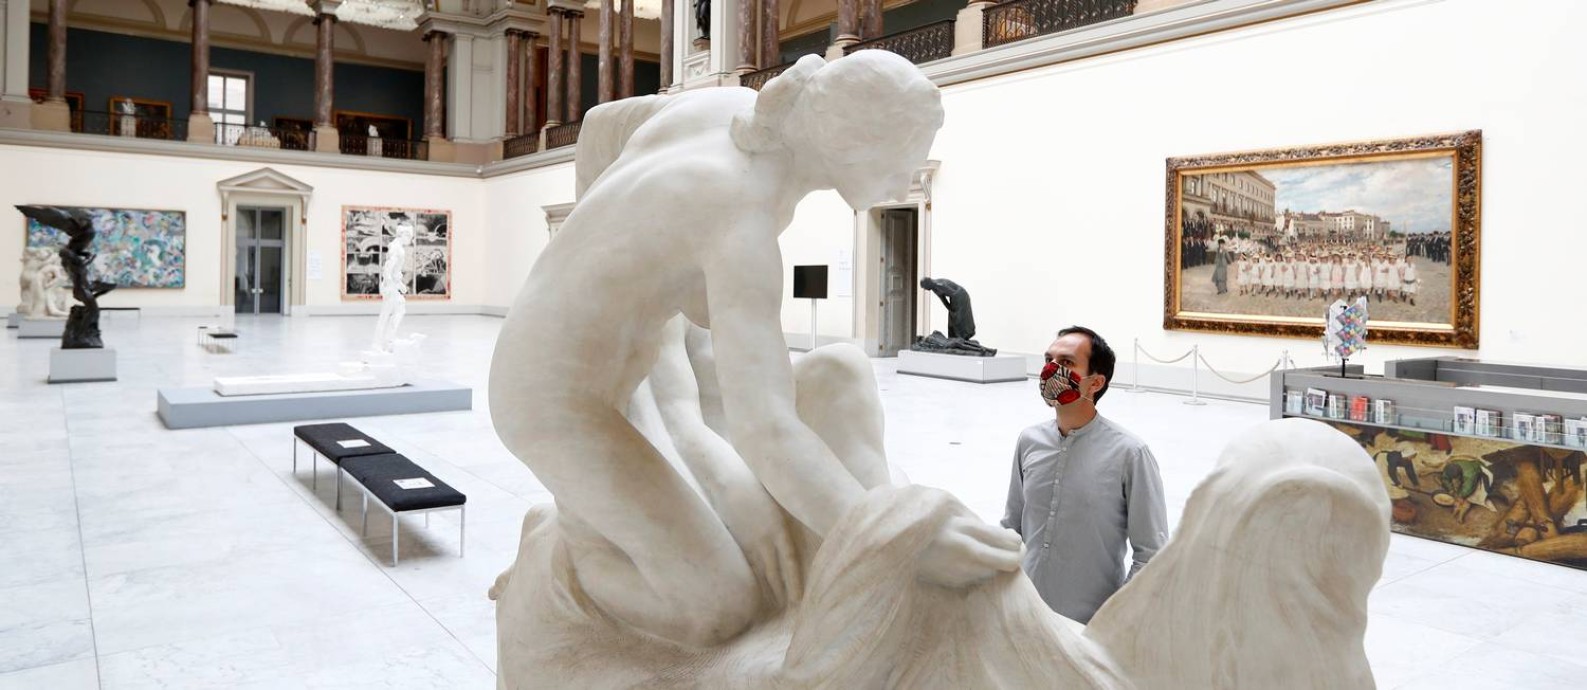 Funcionário do Museu Real de Belas-Artes da Bélgica inspeciona uma escultura, antes da reabertura da instituição Foto: FRANCOIS LENOIR / REUTERS